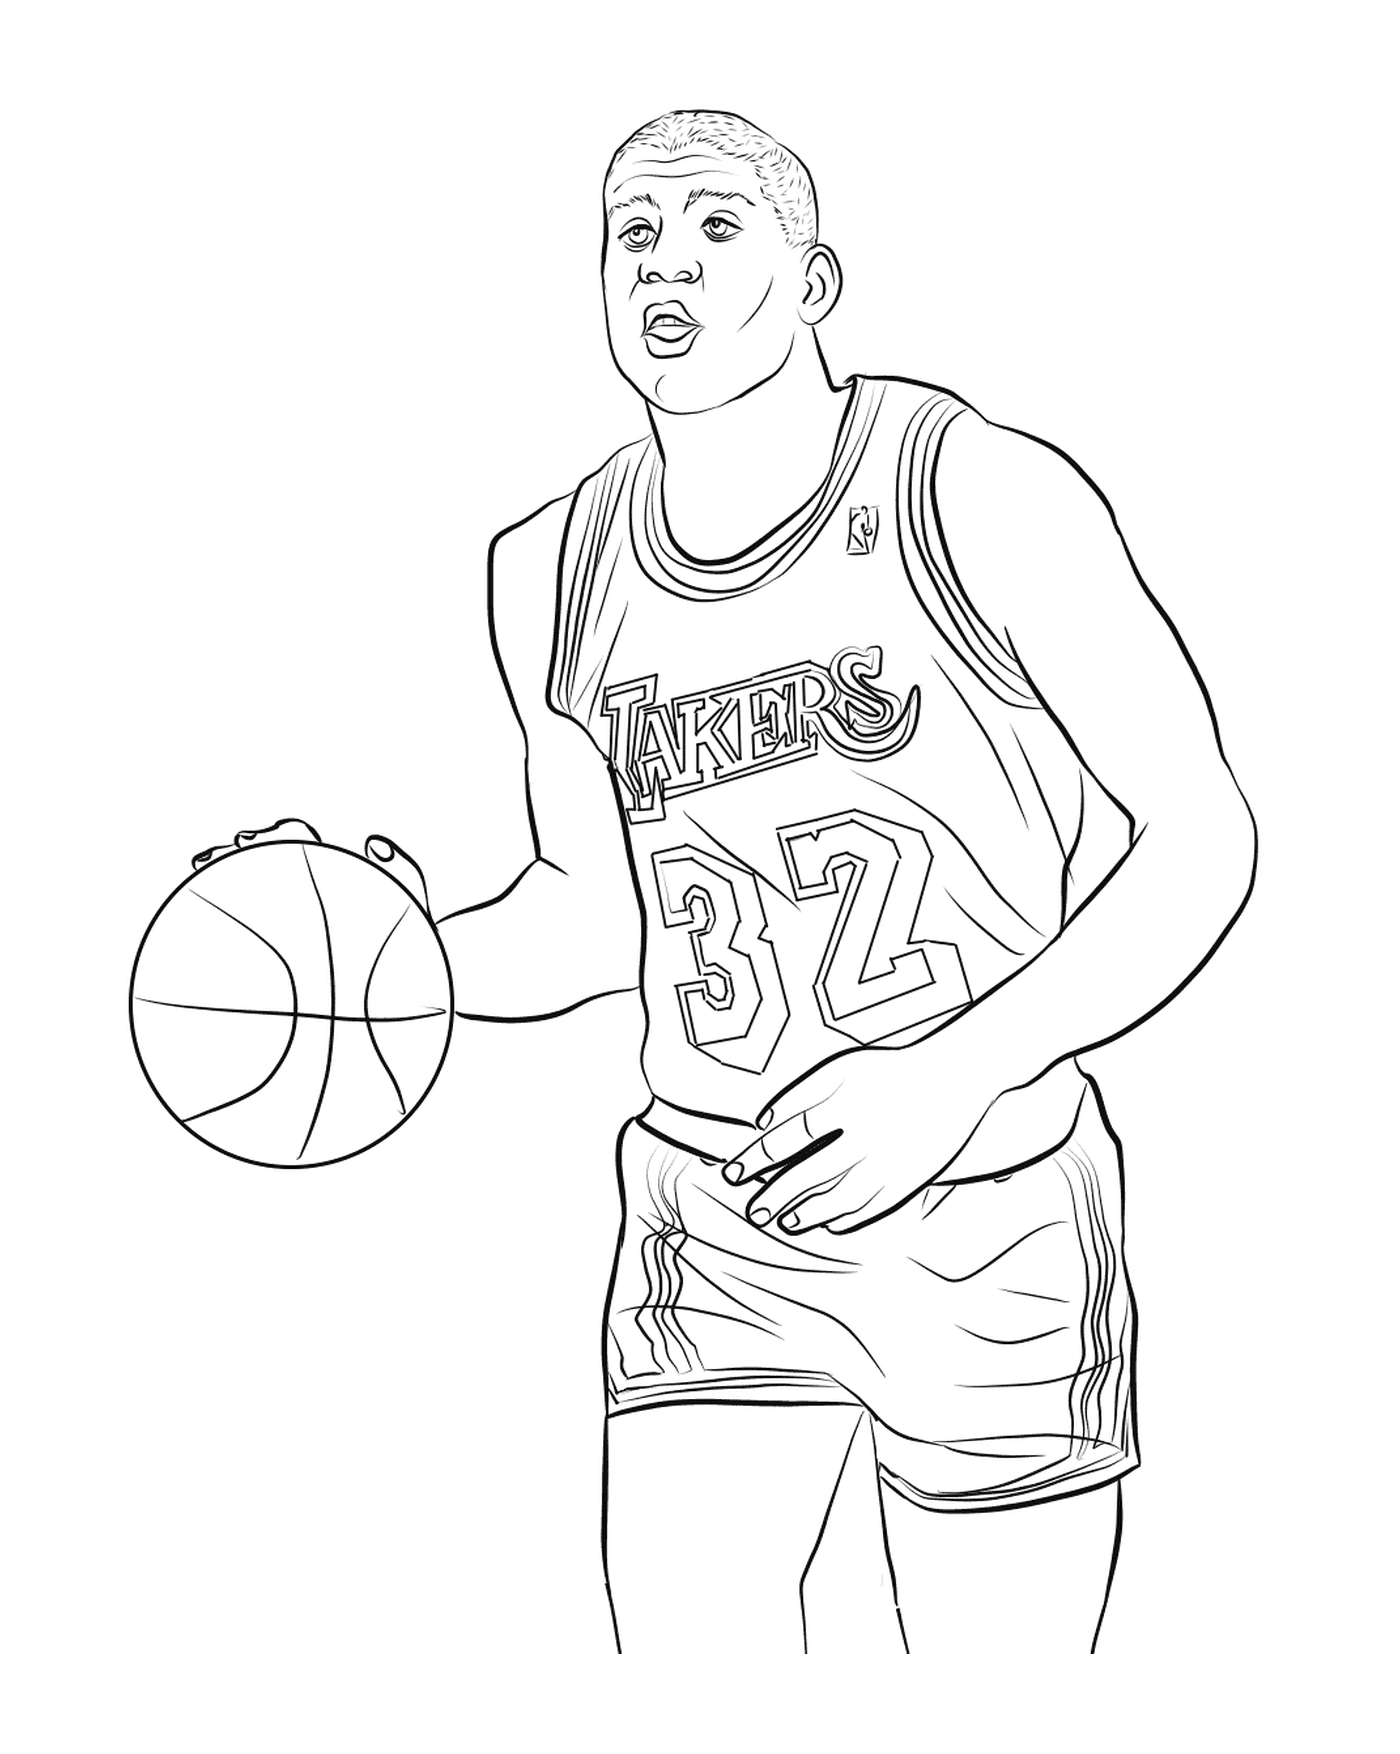   Magic Johnson, joueur de basket 